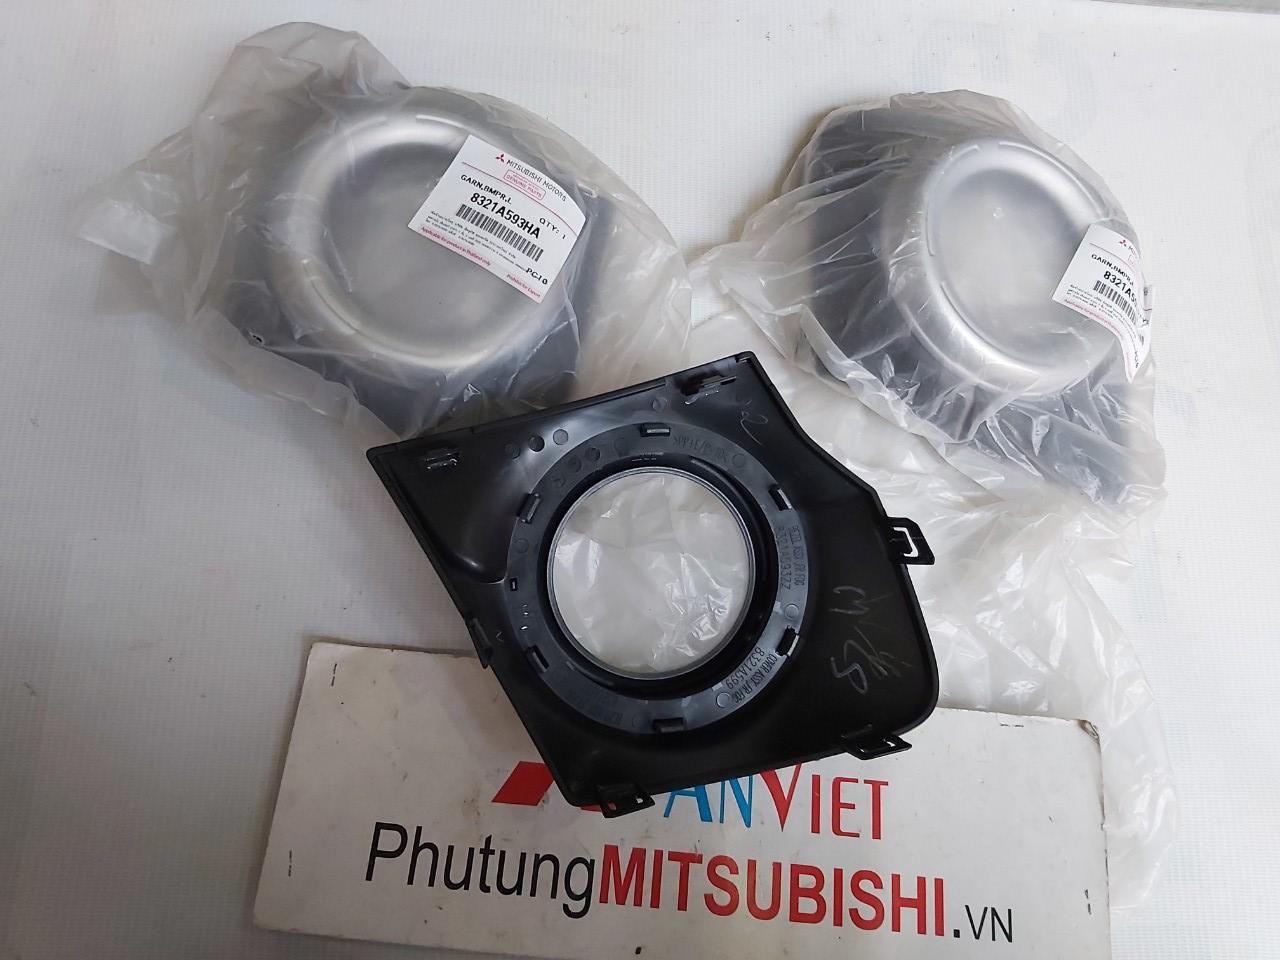 Ốp đèn gầm xe Mitsubishi Triton